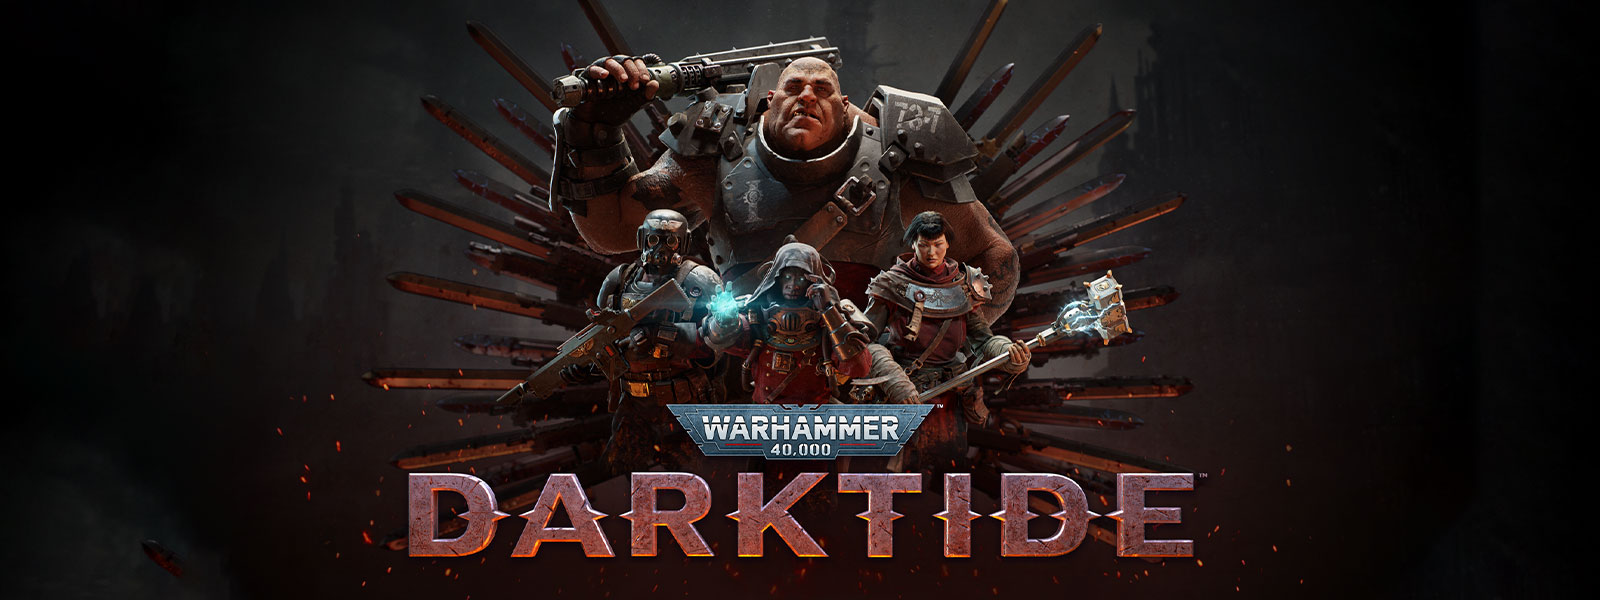 Warhammer 40,000: Darktide, oddíl postav ve zbroji pózuje před motivem čepele.